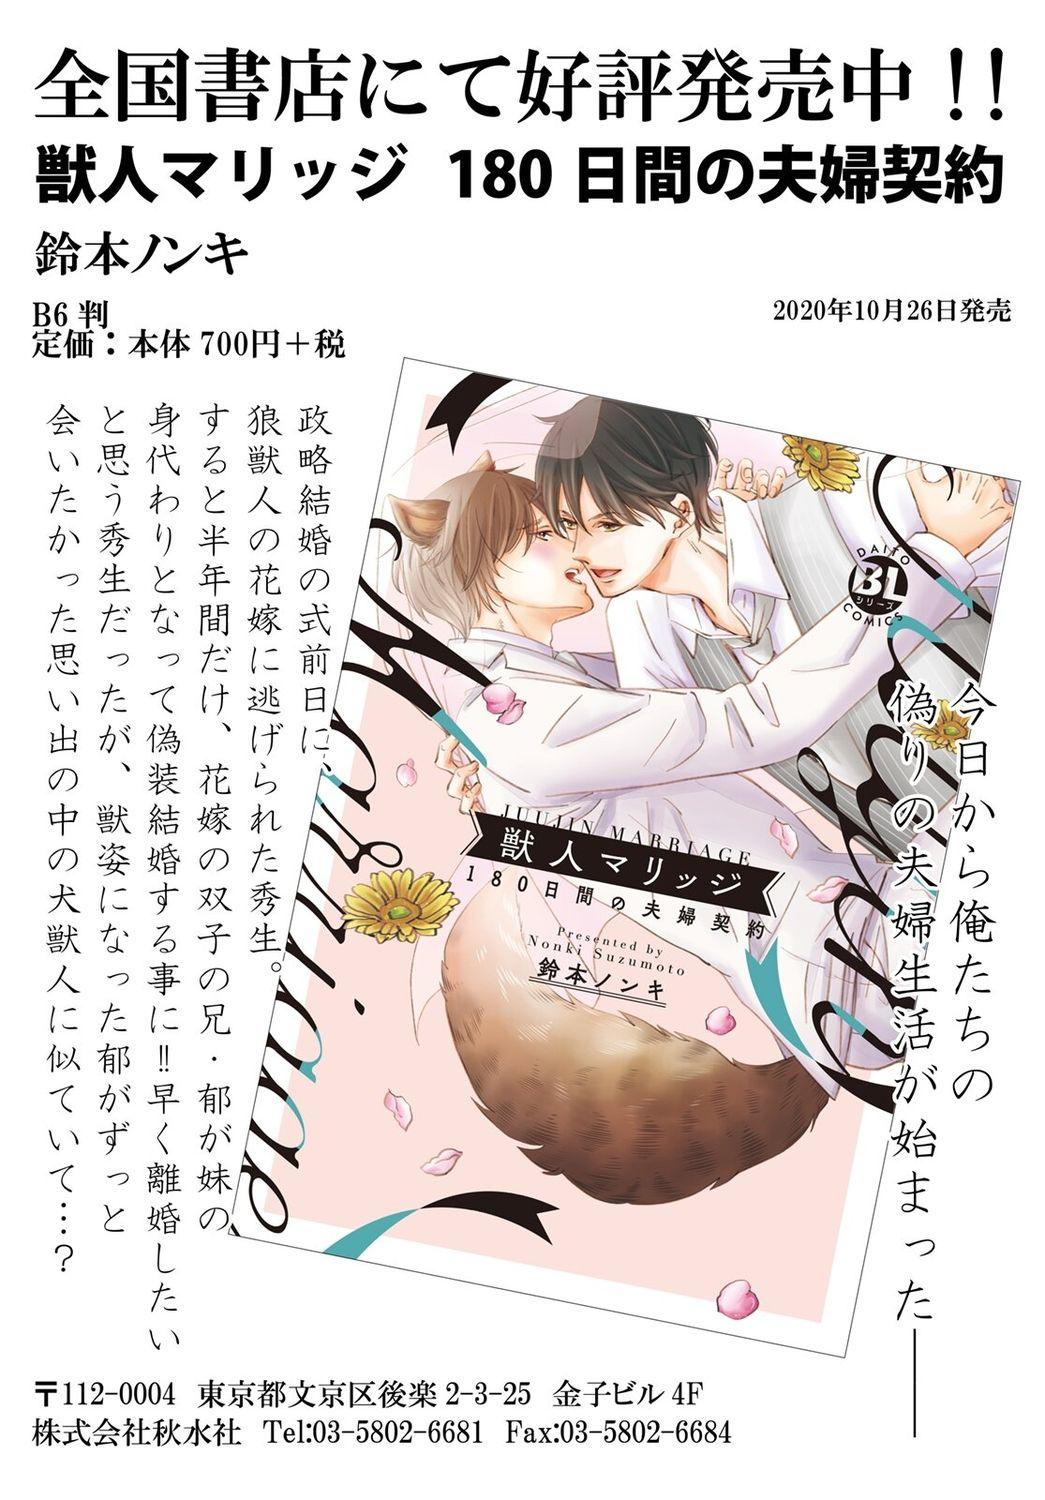 Ani o Yome ni Metorimasu ～ Kondo wa Tebanasanai ～ R18 Edition Vol. 1-4 31